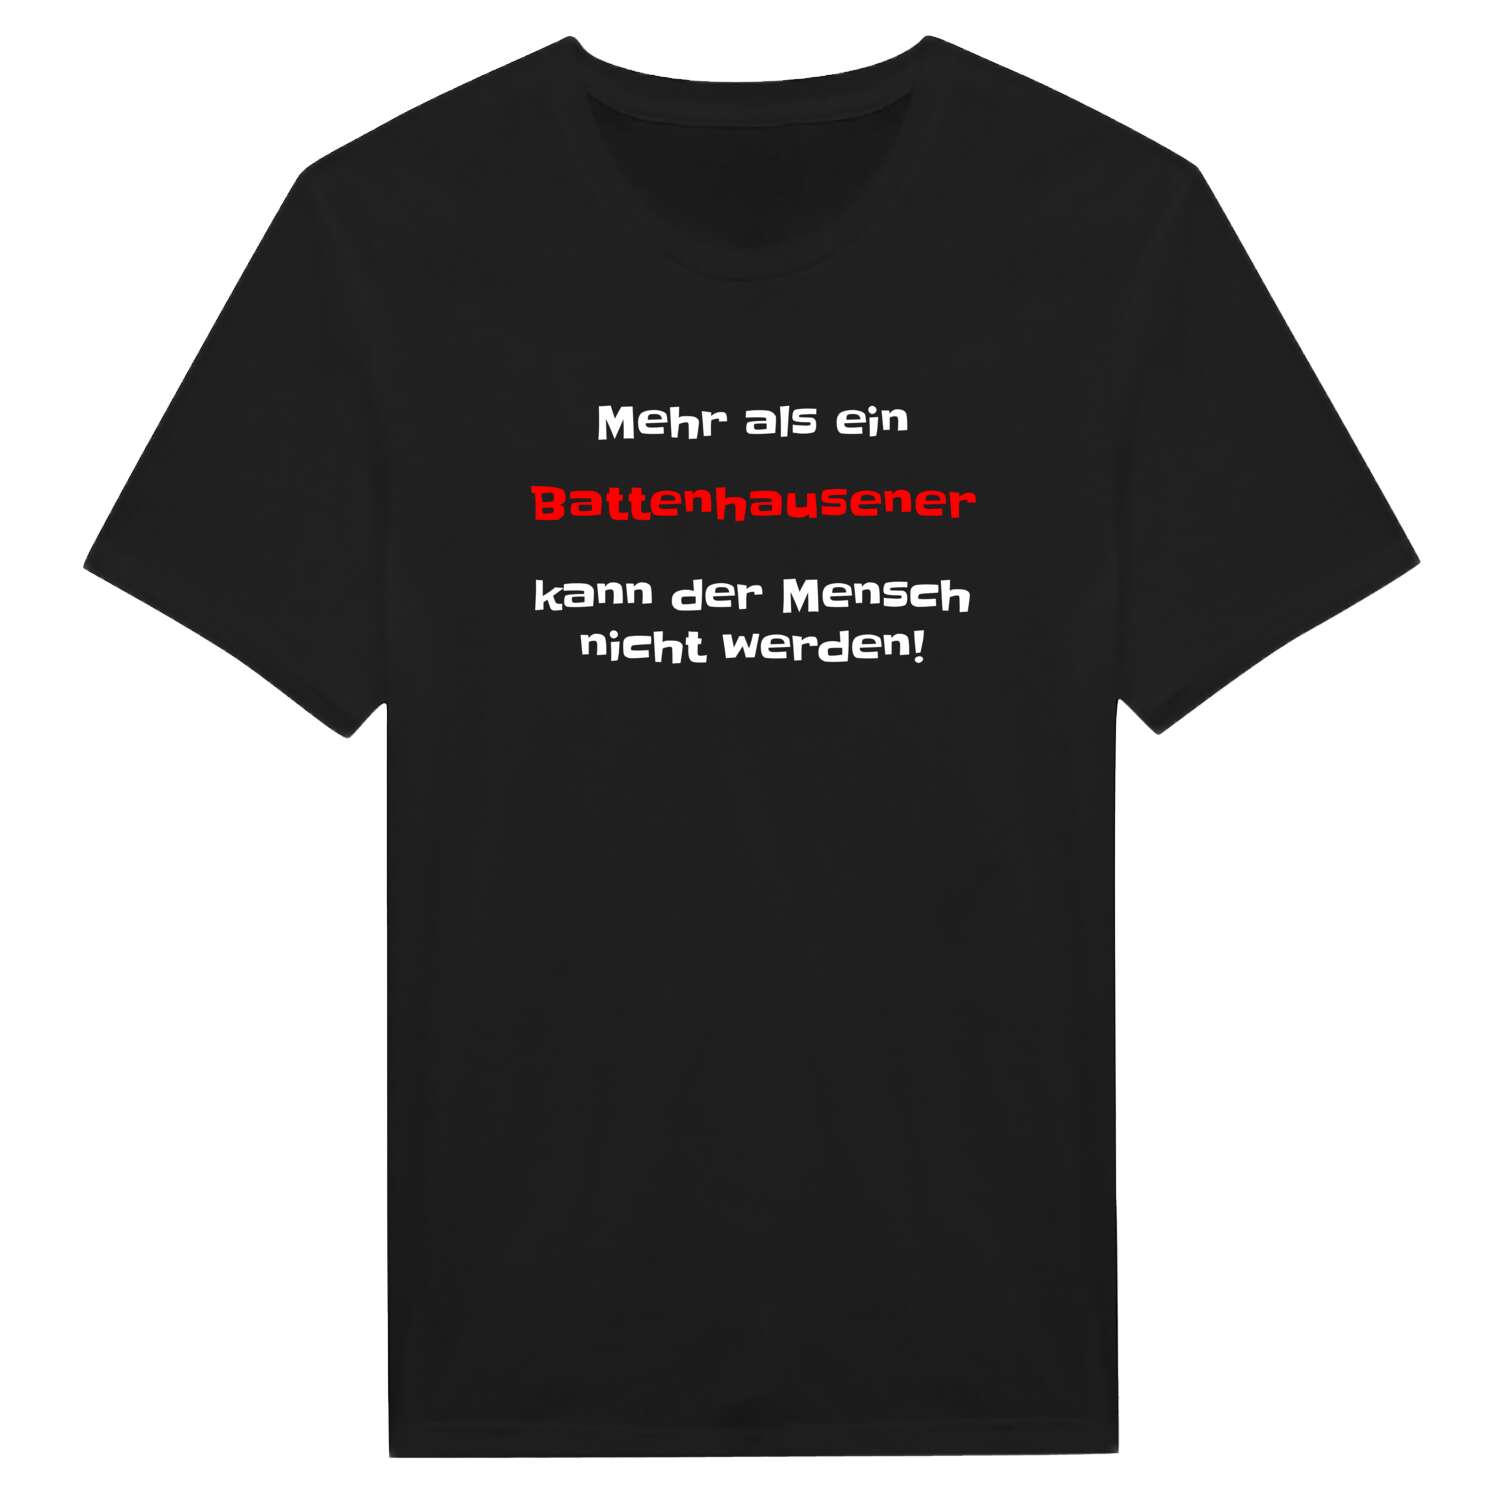 Battenhausen T-Shirt »Mehr als ein«